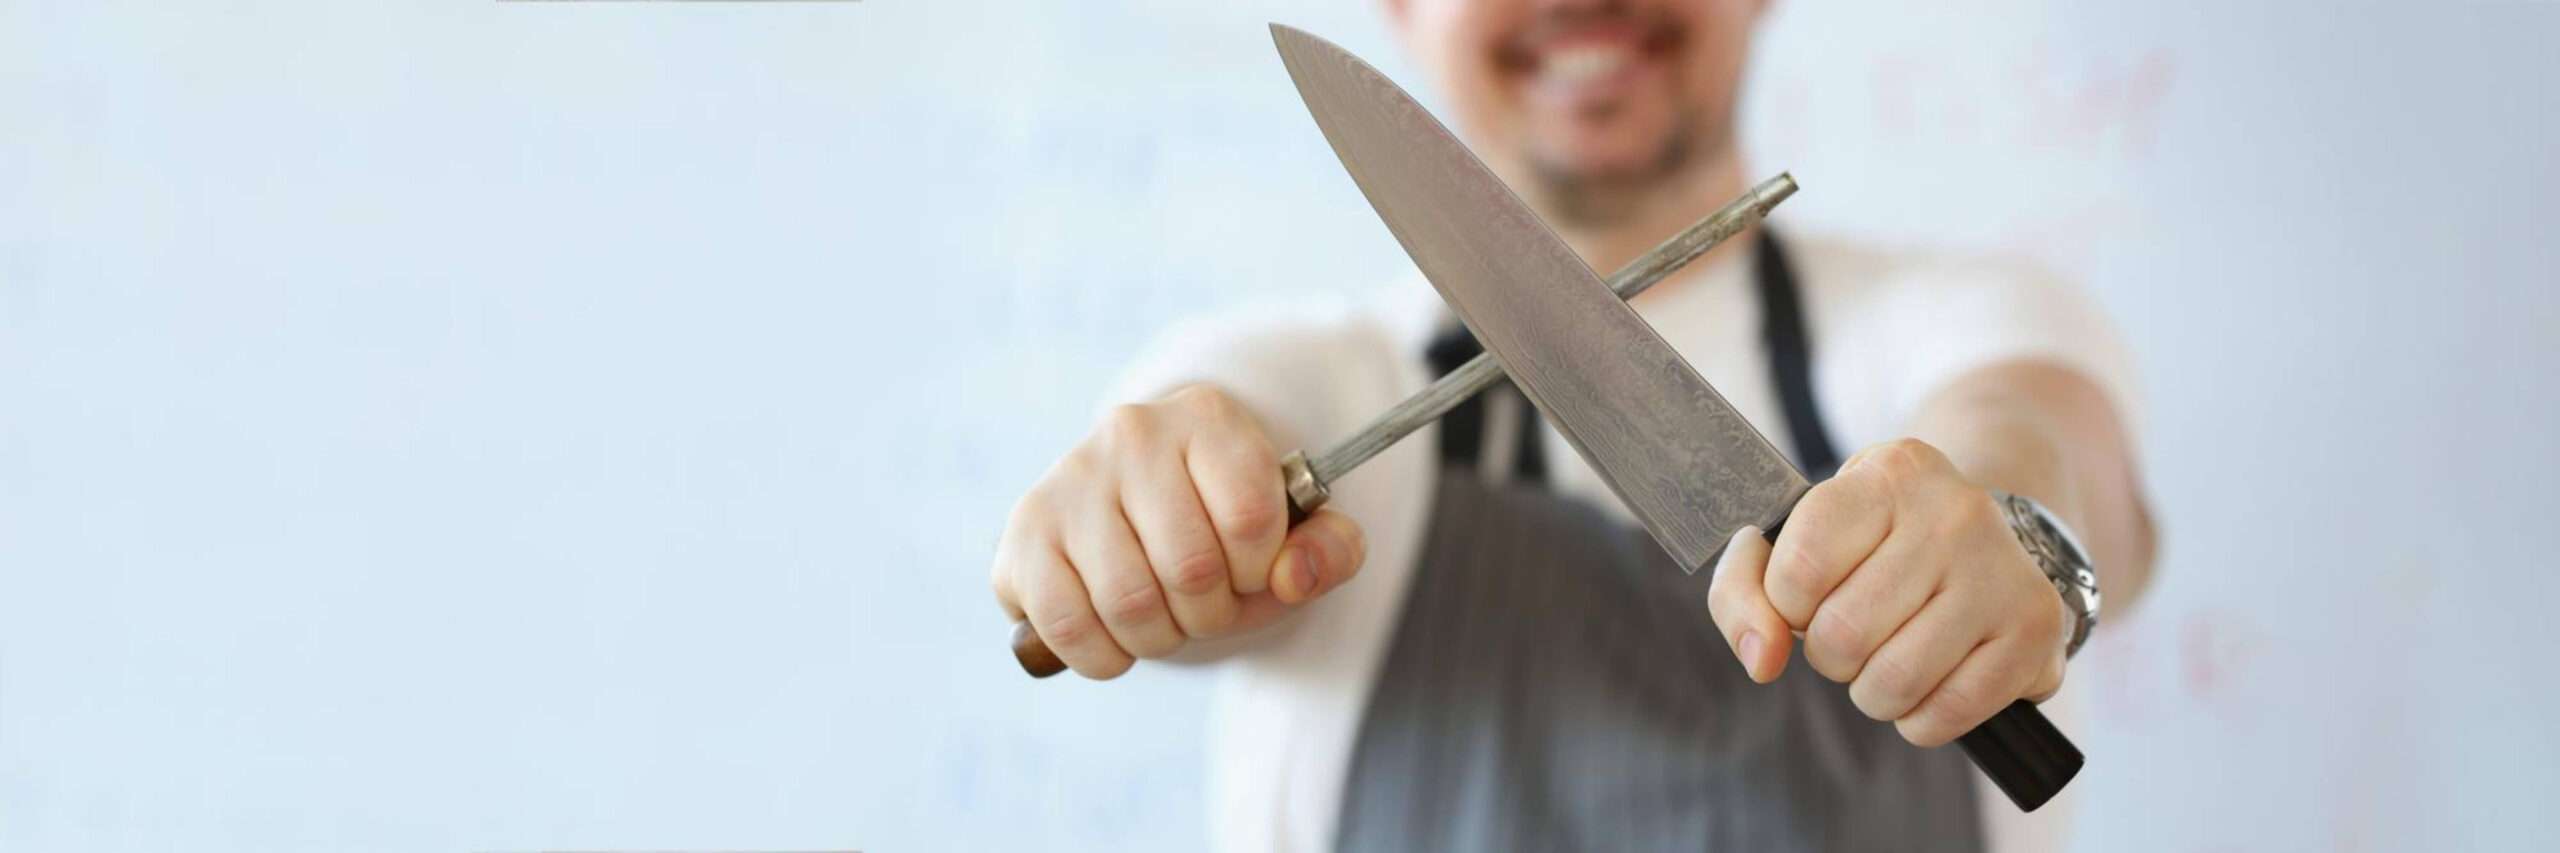 Como amolar faca em casa: 3 dicas e passo a passo